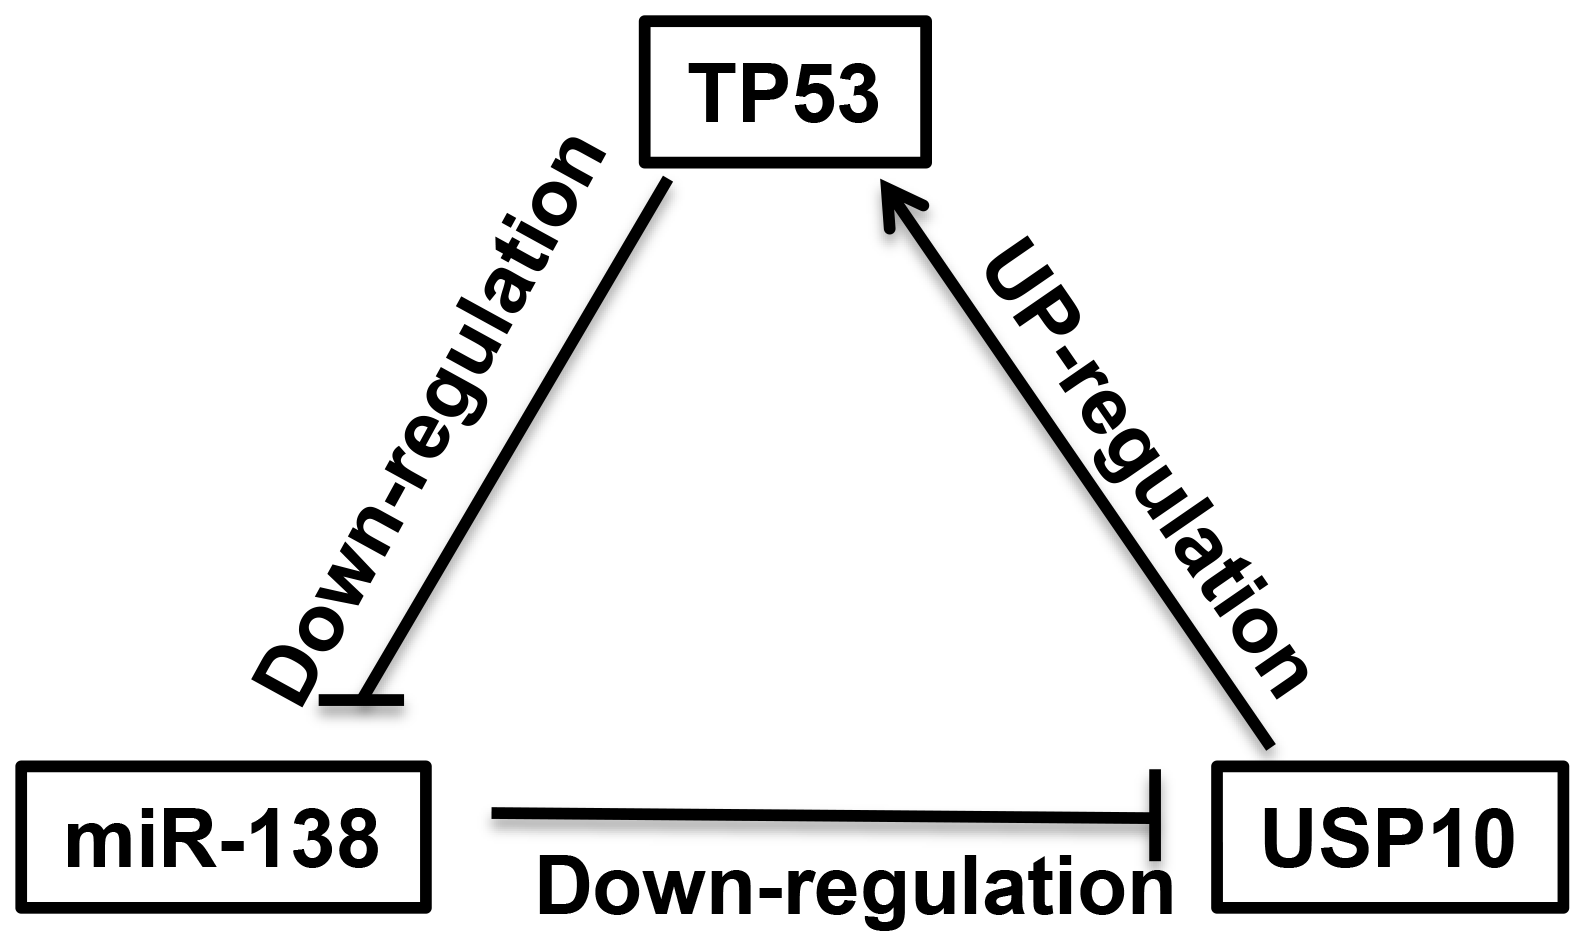 A negative feedback regulatory loop between miR-138 and TP53 is mediated by USP10.